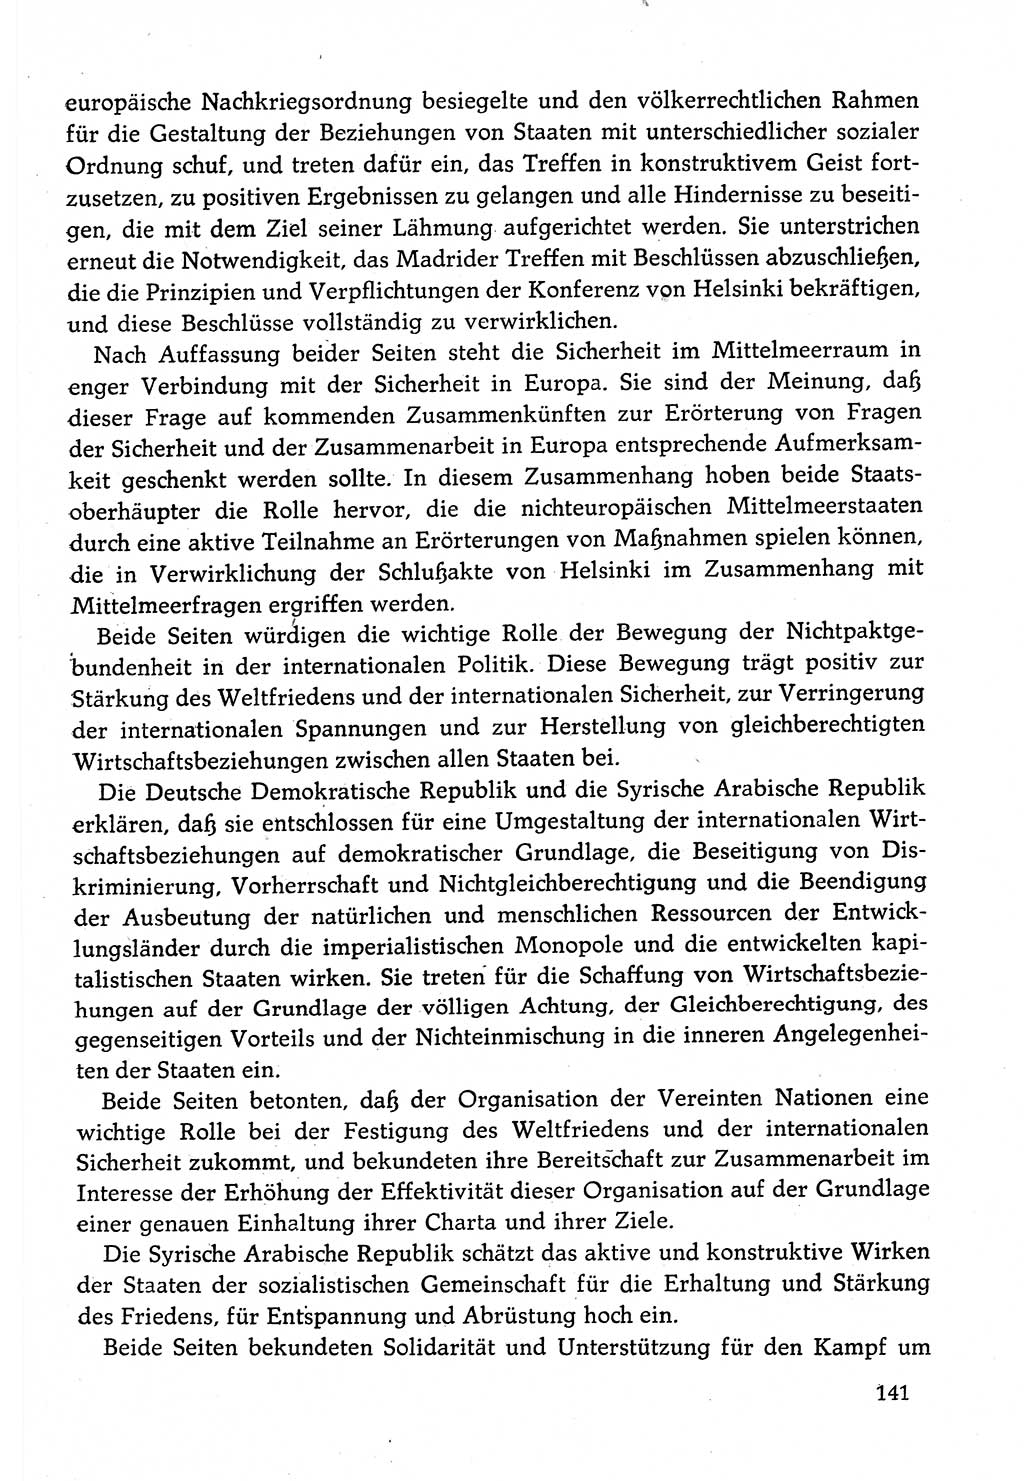 Dokumente der Sozialistischen Einheitspartei Deutschlands (SED) [Deutsche Demokratische Republik (DDR)] 1982-1983, Seite 141 (Dok. SED DDR 1982-1983, S. 141)